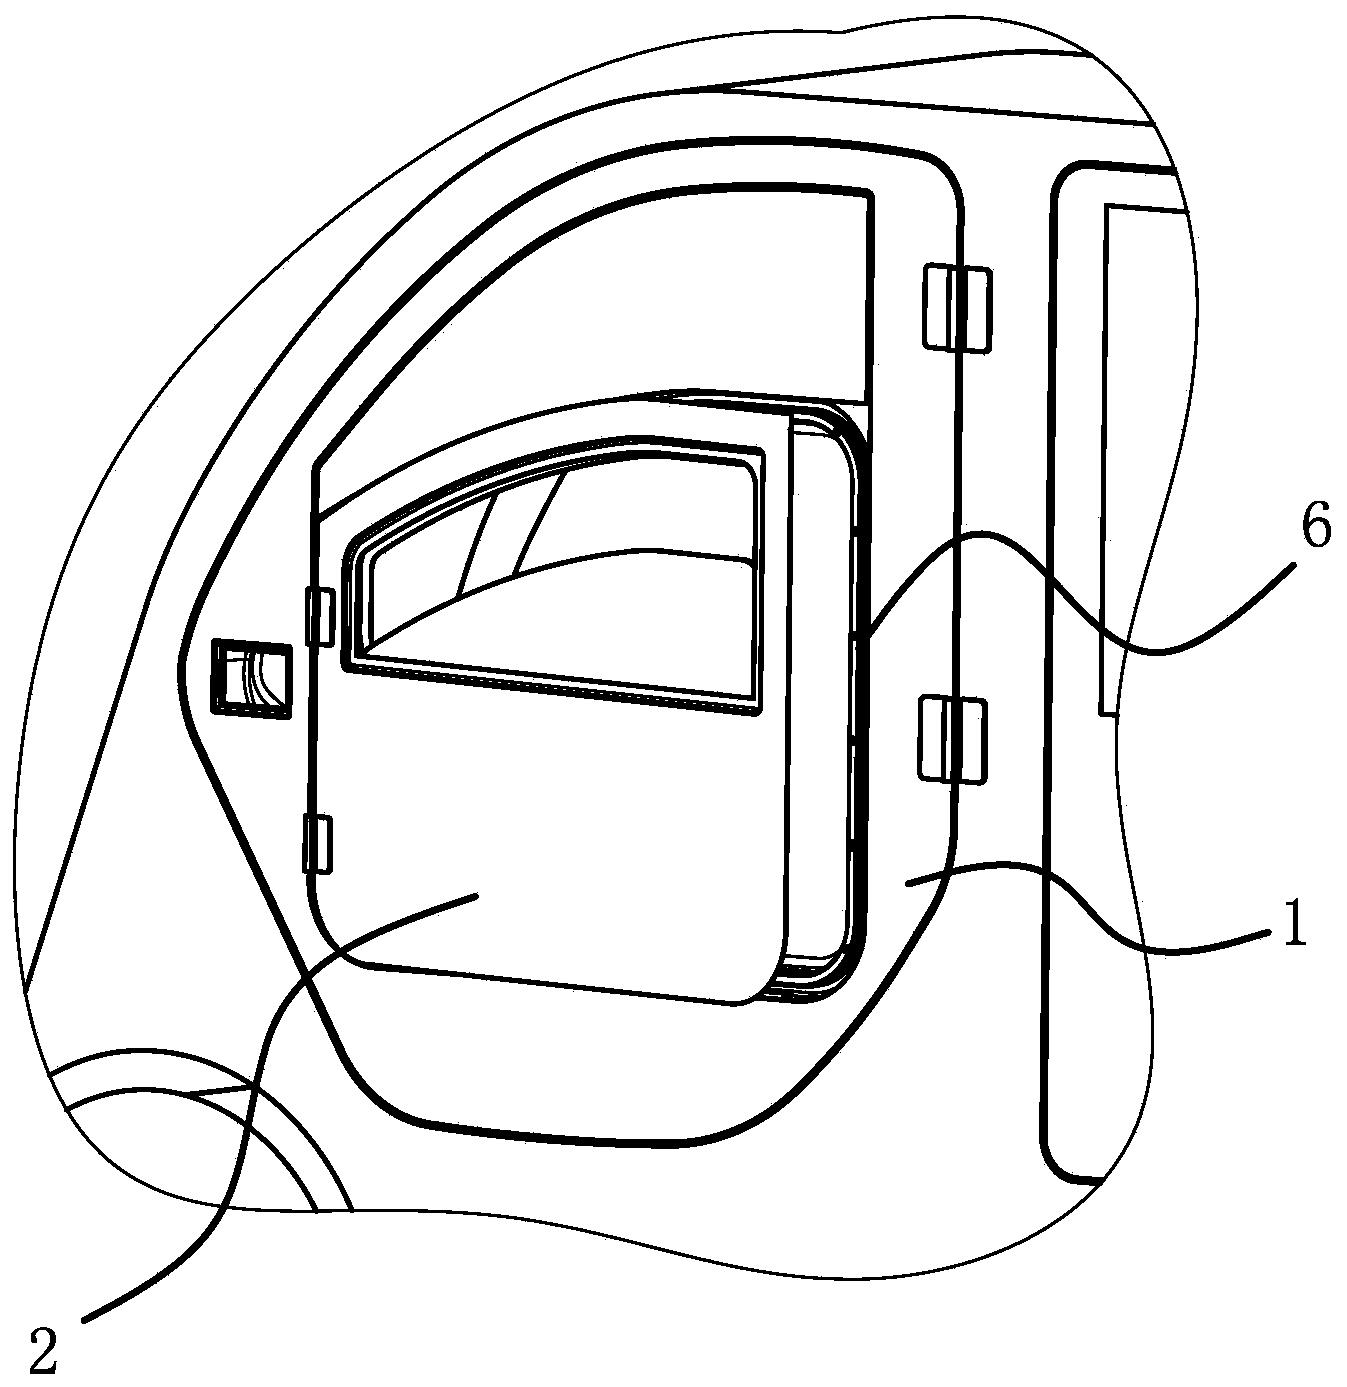 Multifunctional automobile door device